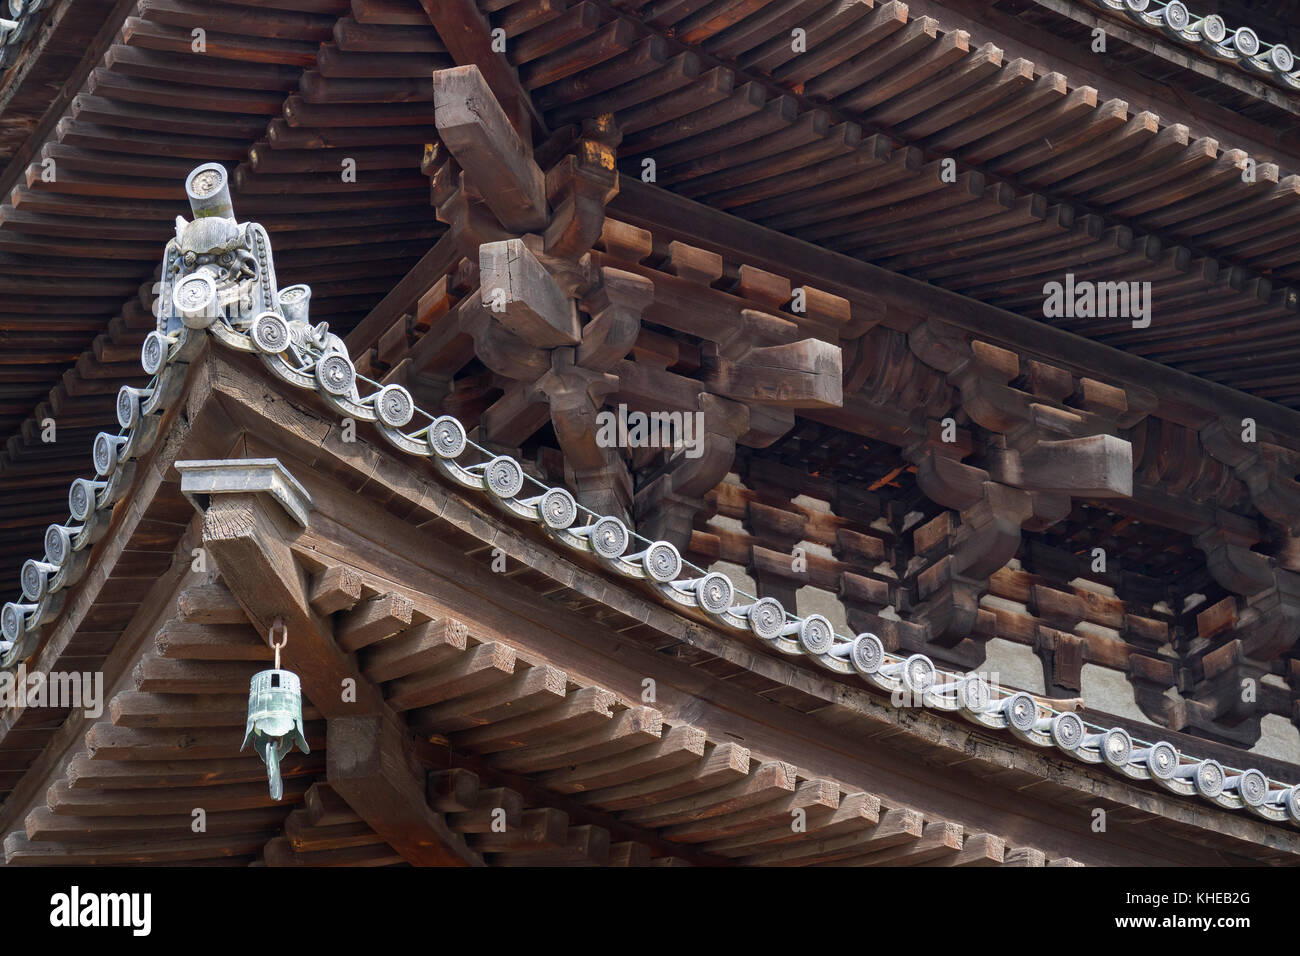 Nara, Japan - 30. Mai 2017: hölzerne Dachkonstruktion der fünf stöckige Pagode des kofukuji Tempel in Nara Stockfoto